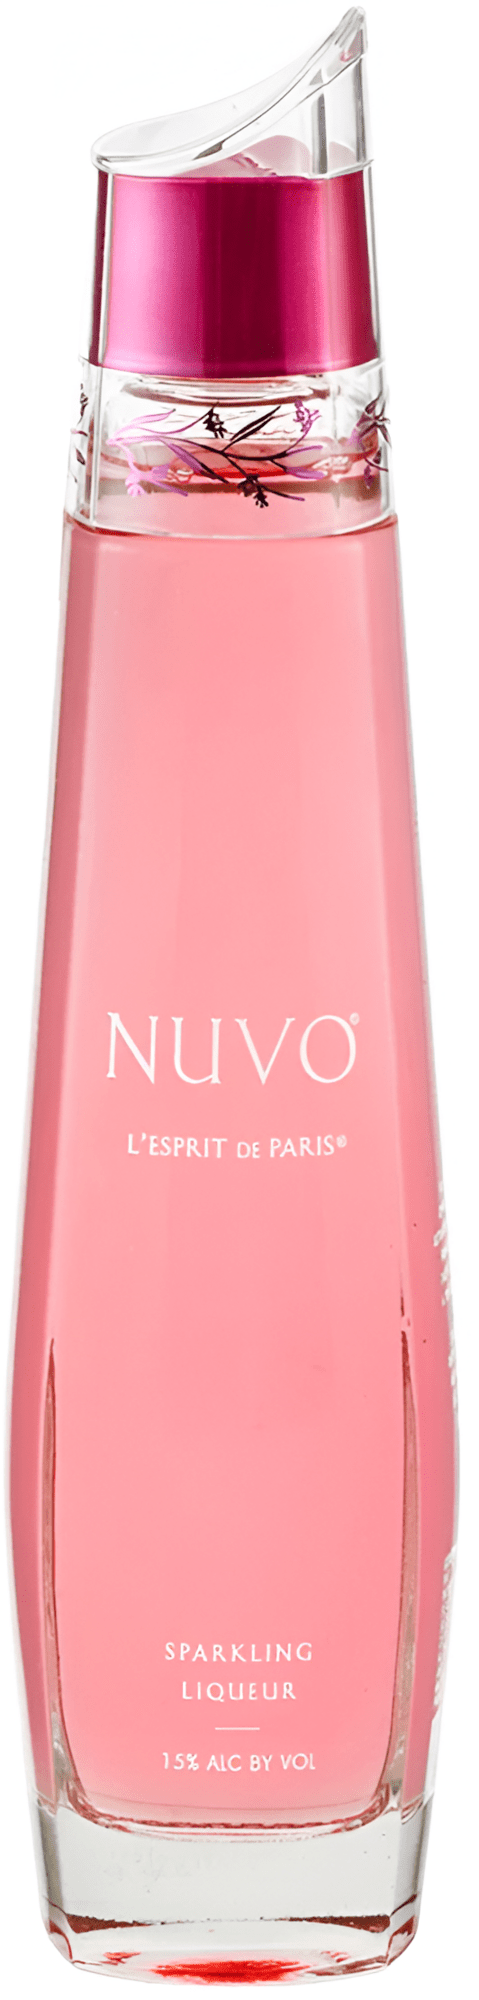 Nuvo L' Esprit de Paris Sparkling 15% 0,7l